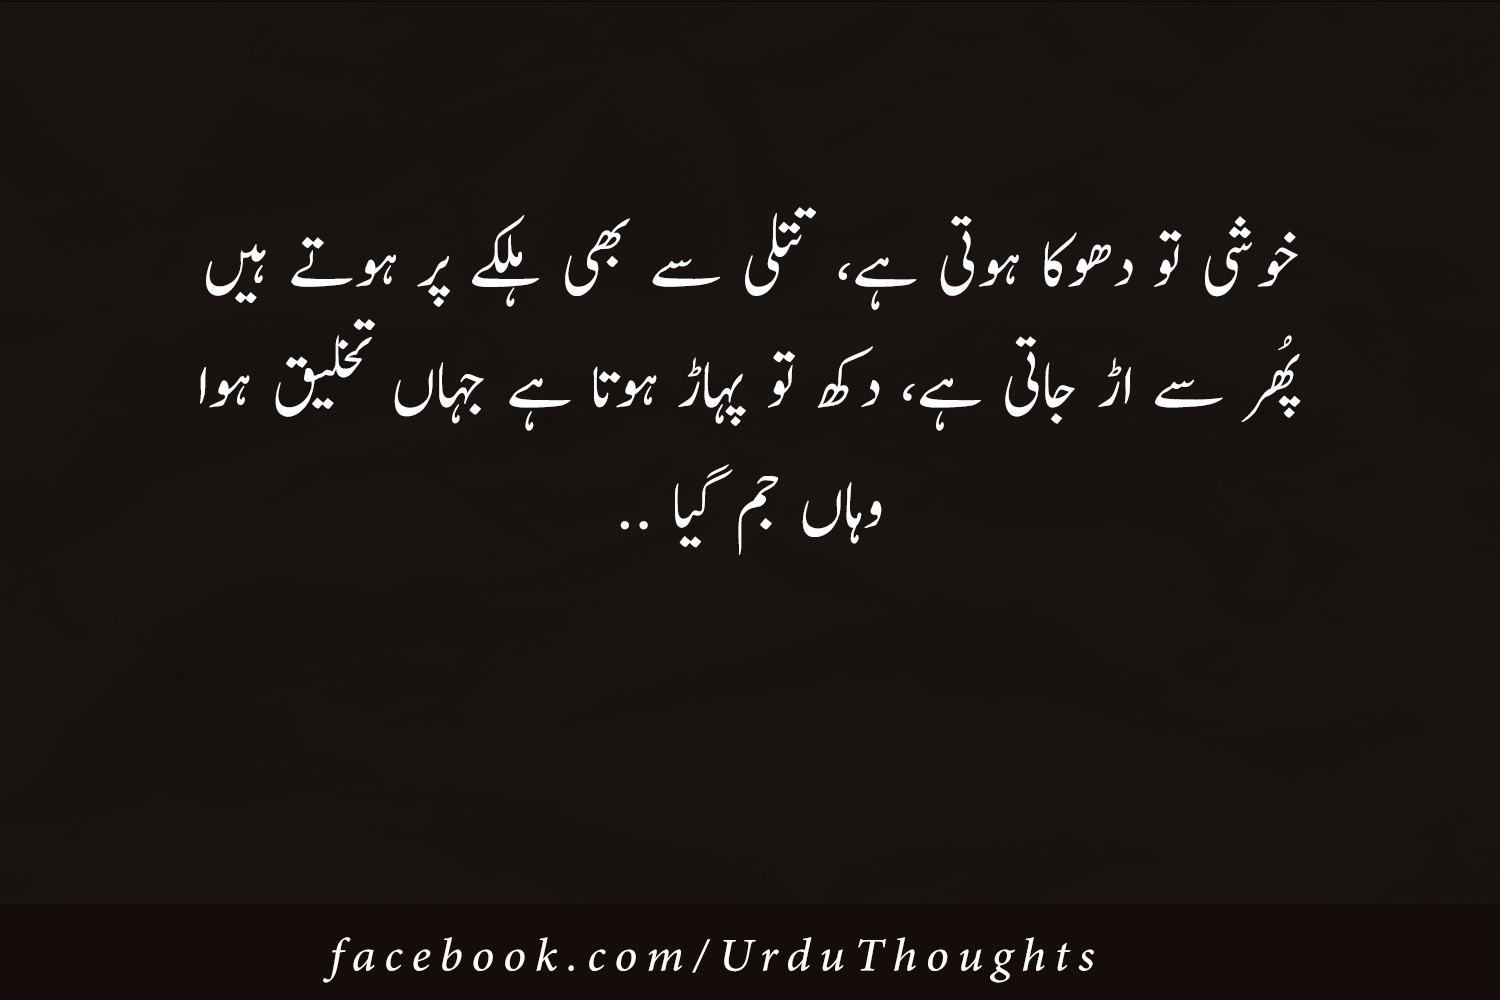 Images For Urdu Quotes - Famous Urdu Quotes Images - Urdu Thoughts